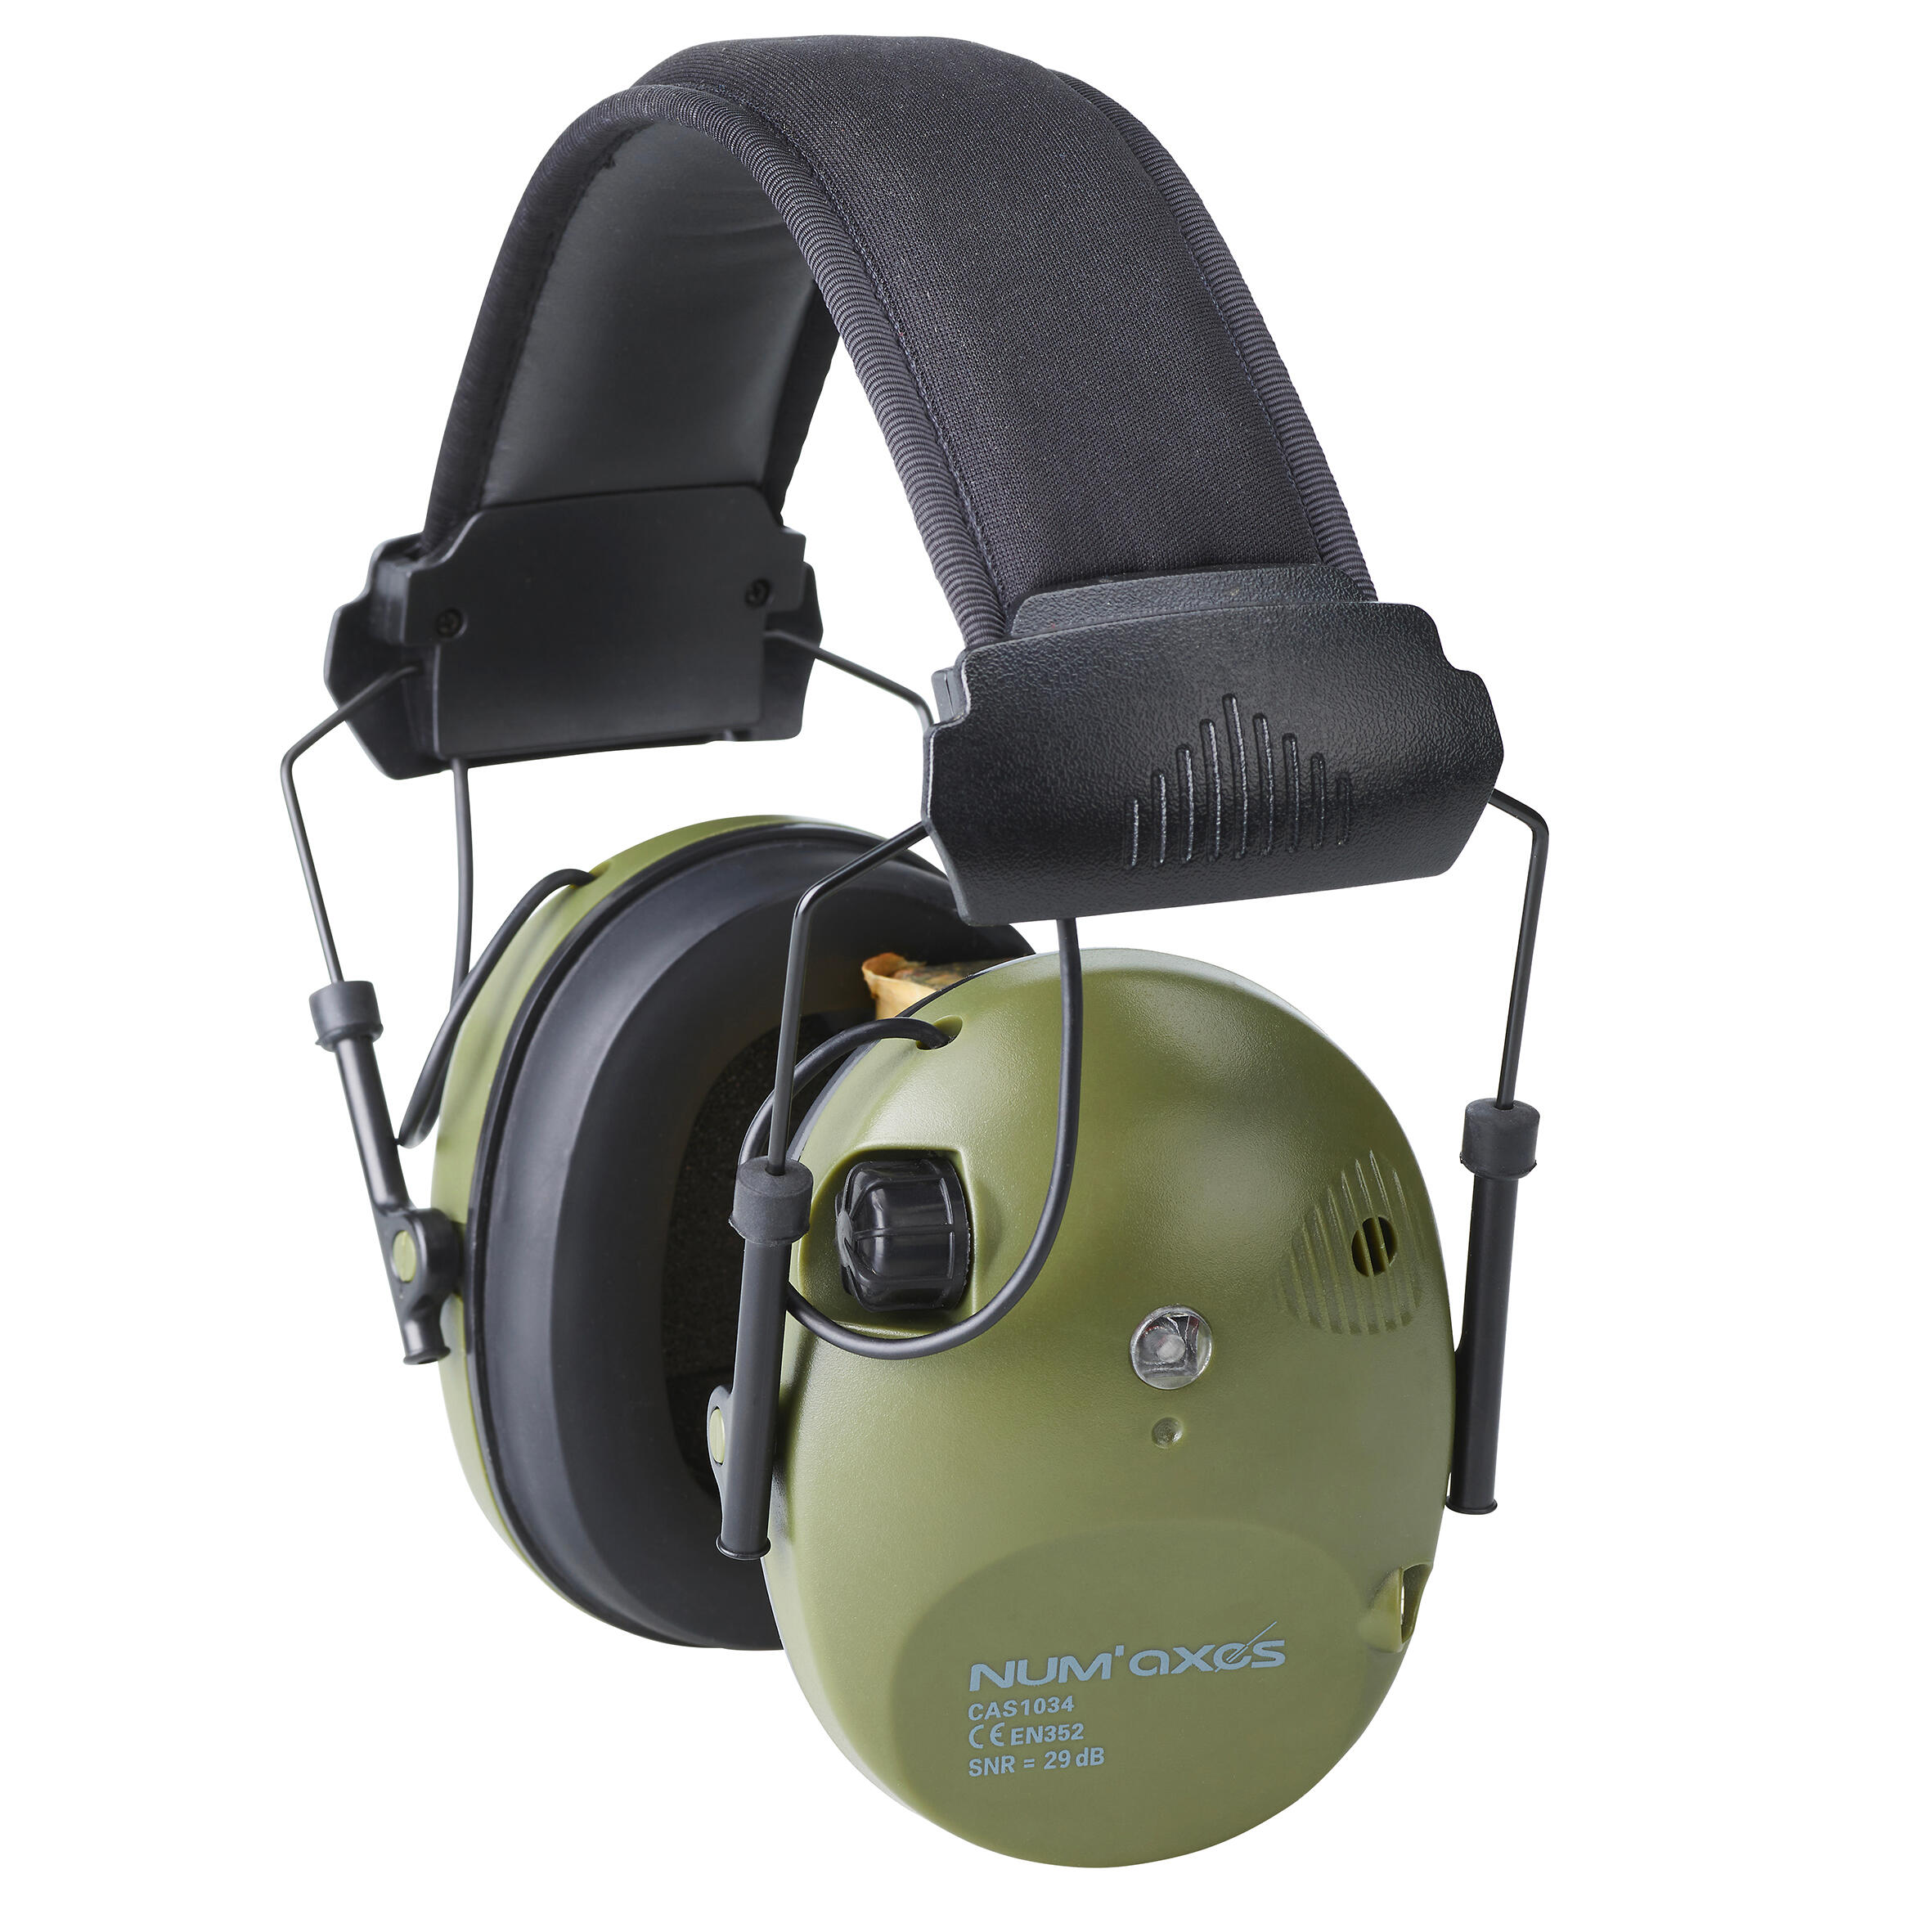 Cască de protecție auditivă electronică anti-zgomot CAS1034 Num Axes Anti-Zgomot